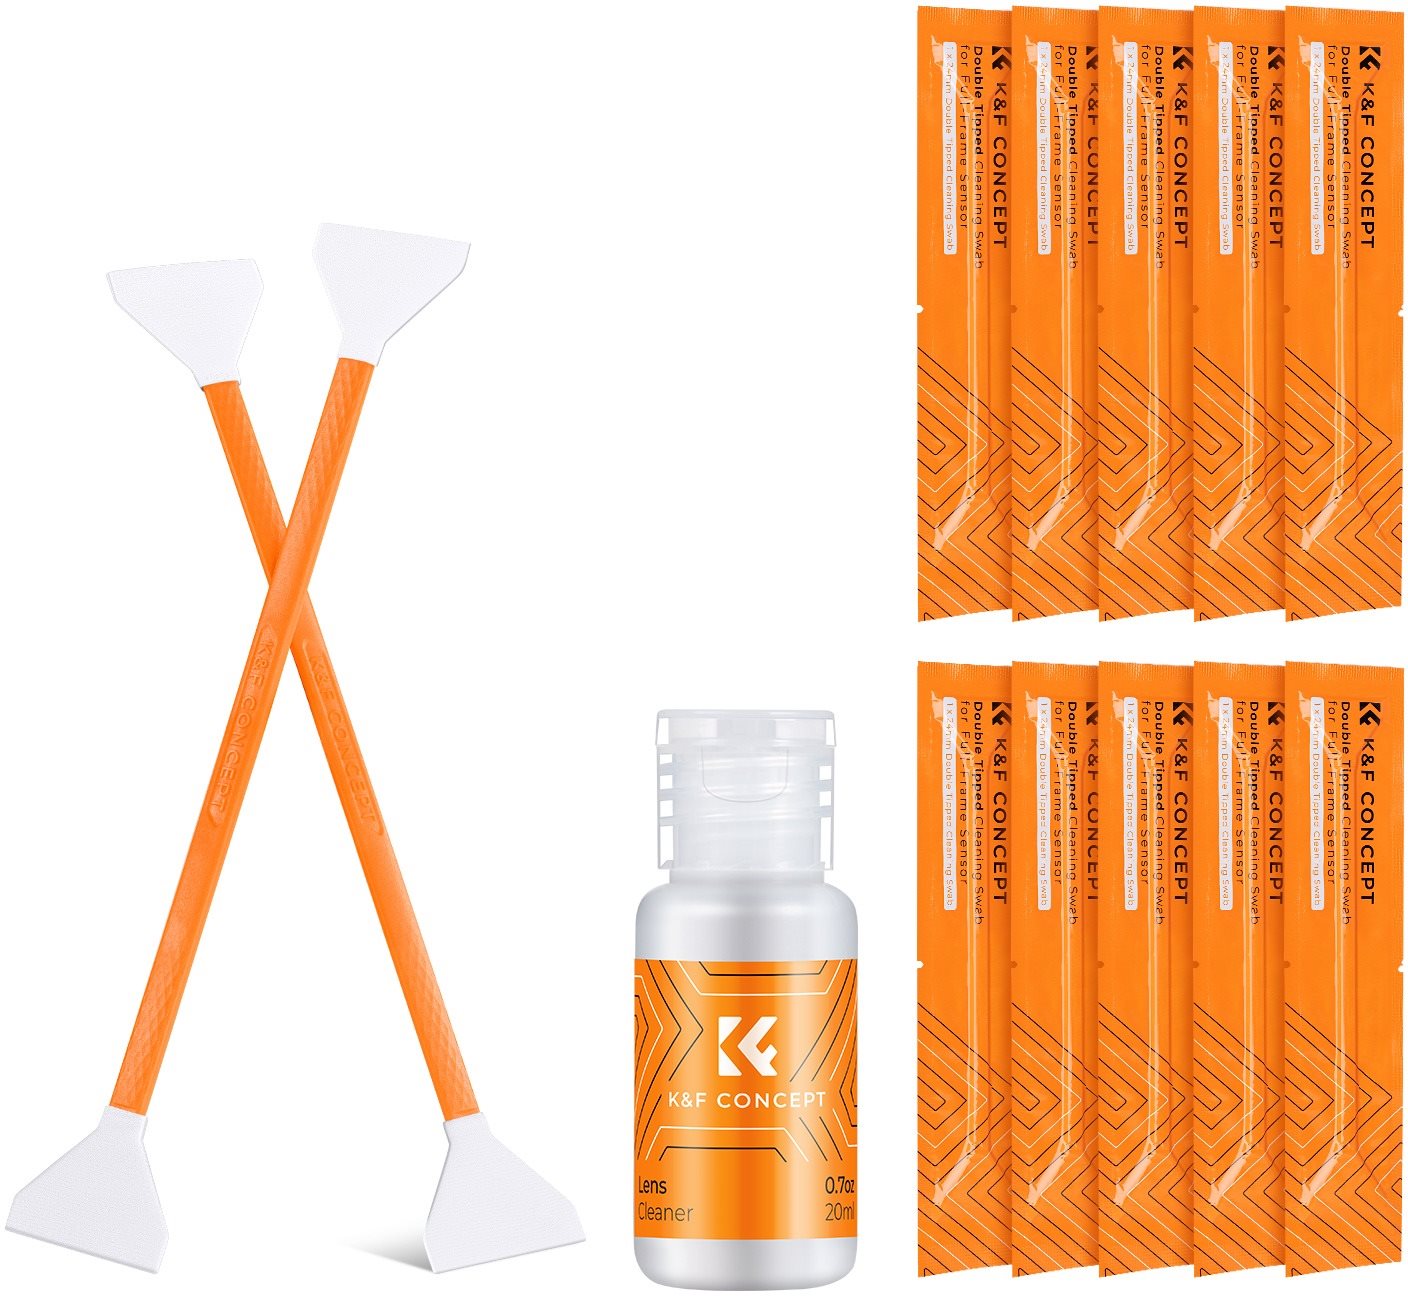 K&F Concept Fullframe Sensor Cleaning Set (10 db kettős törlőkendő + 20 ml tisztító oldat)